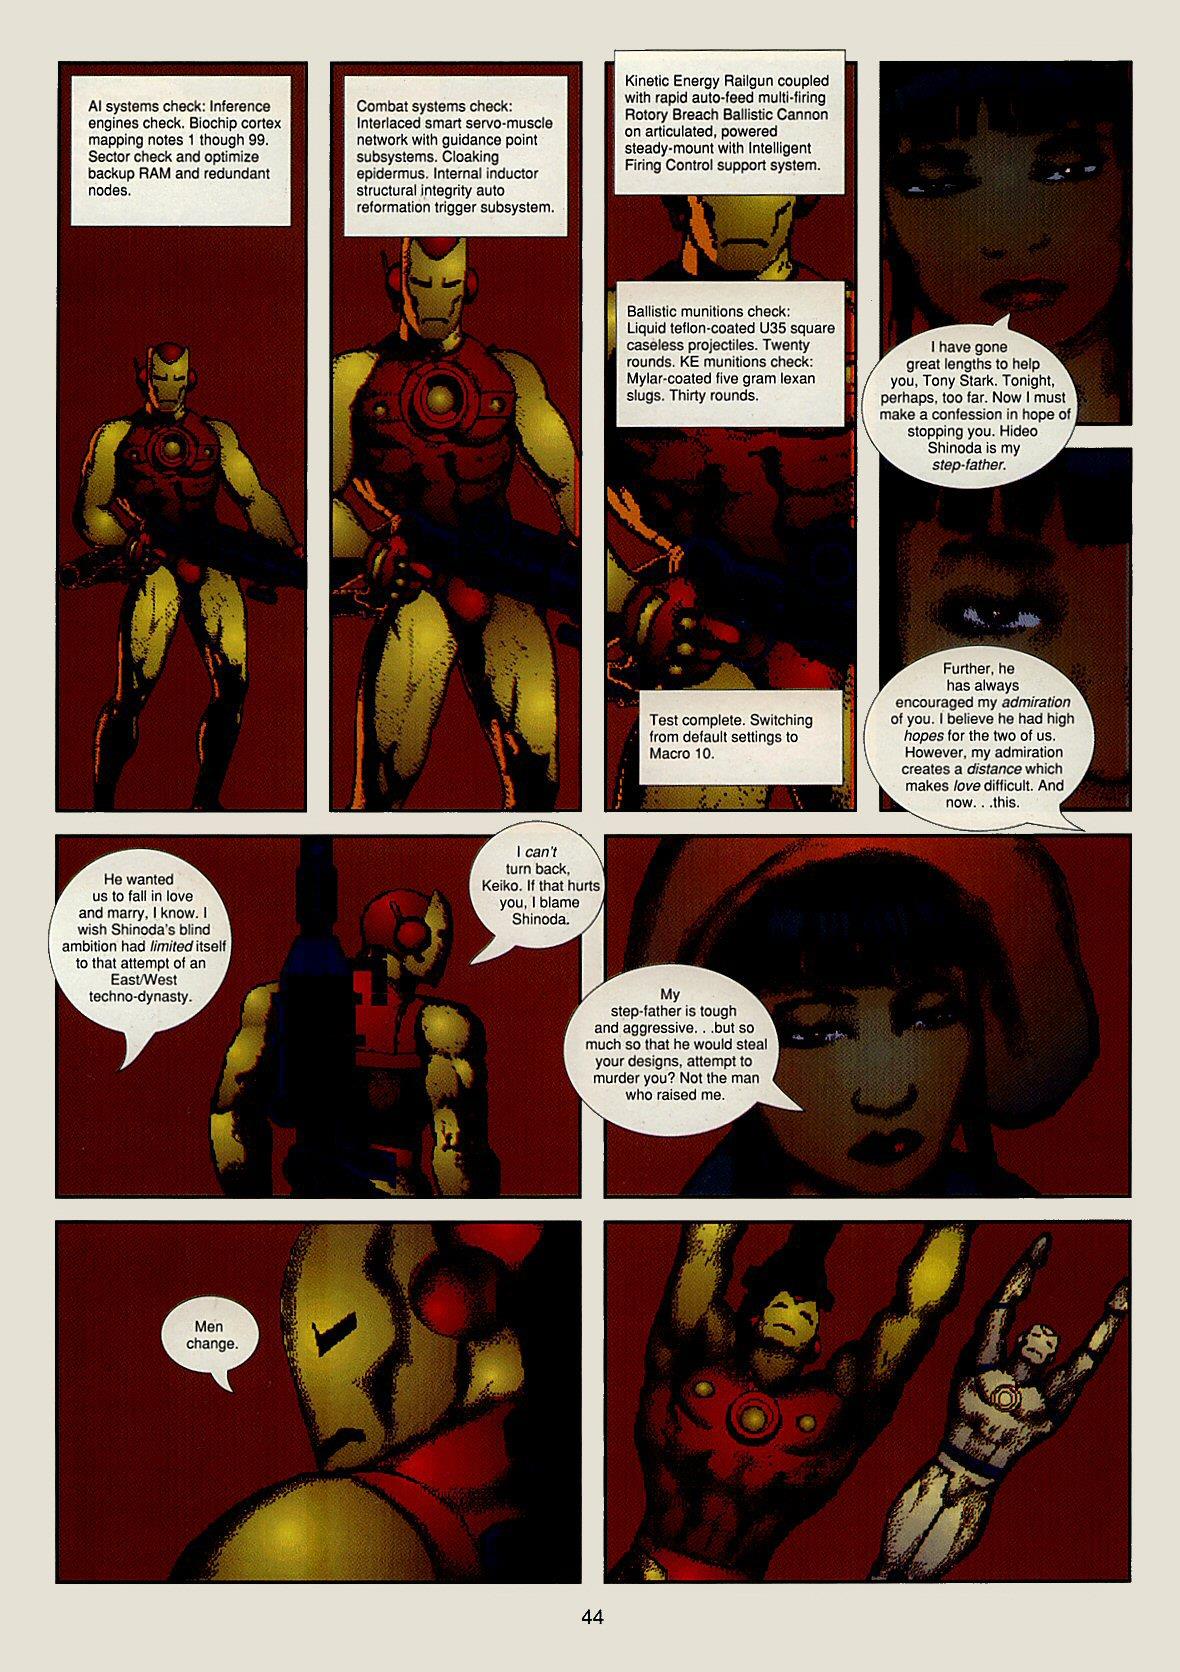 Iron Man Crash review